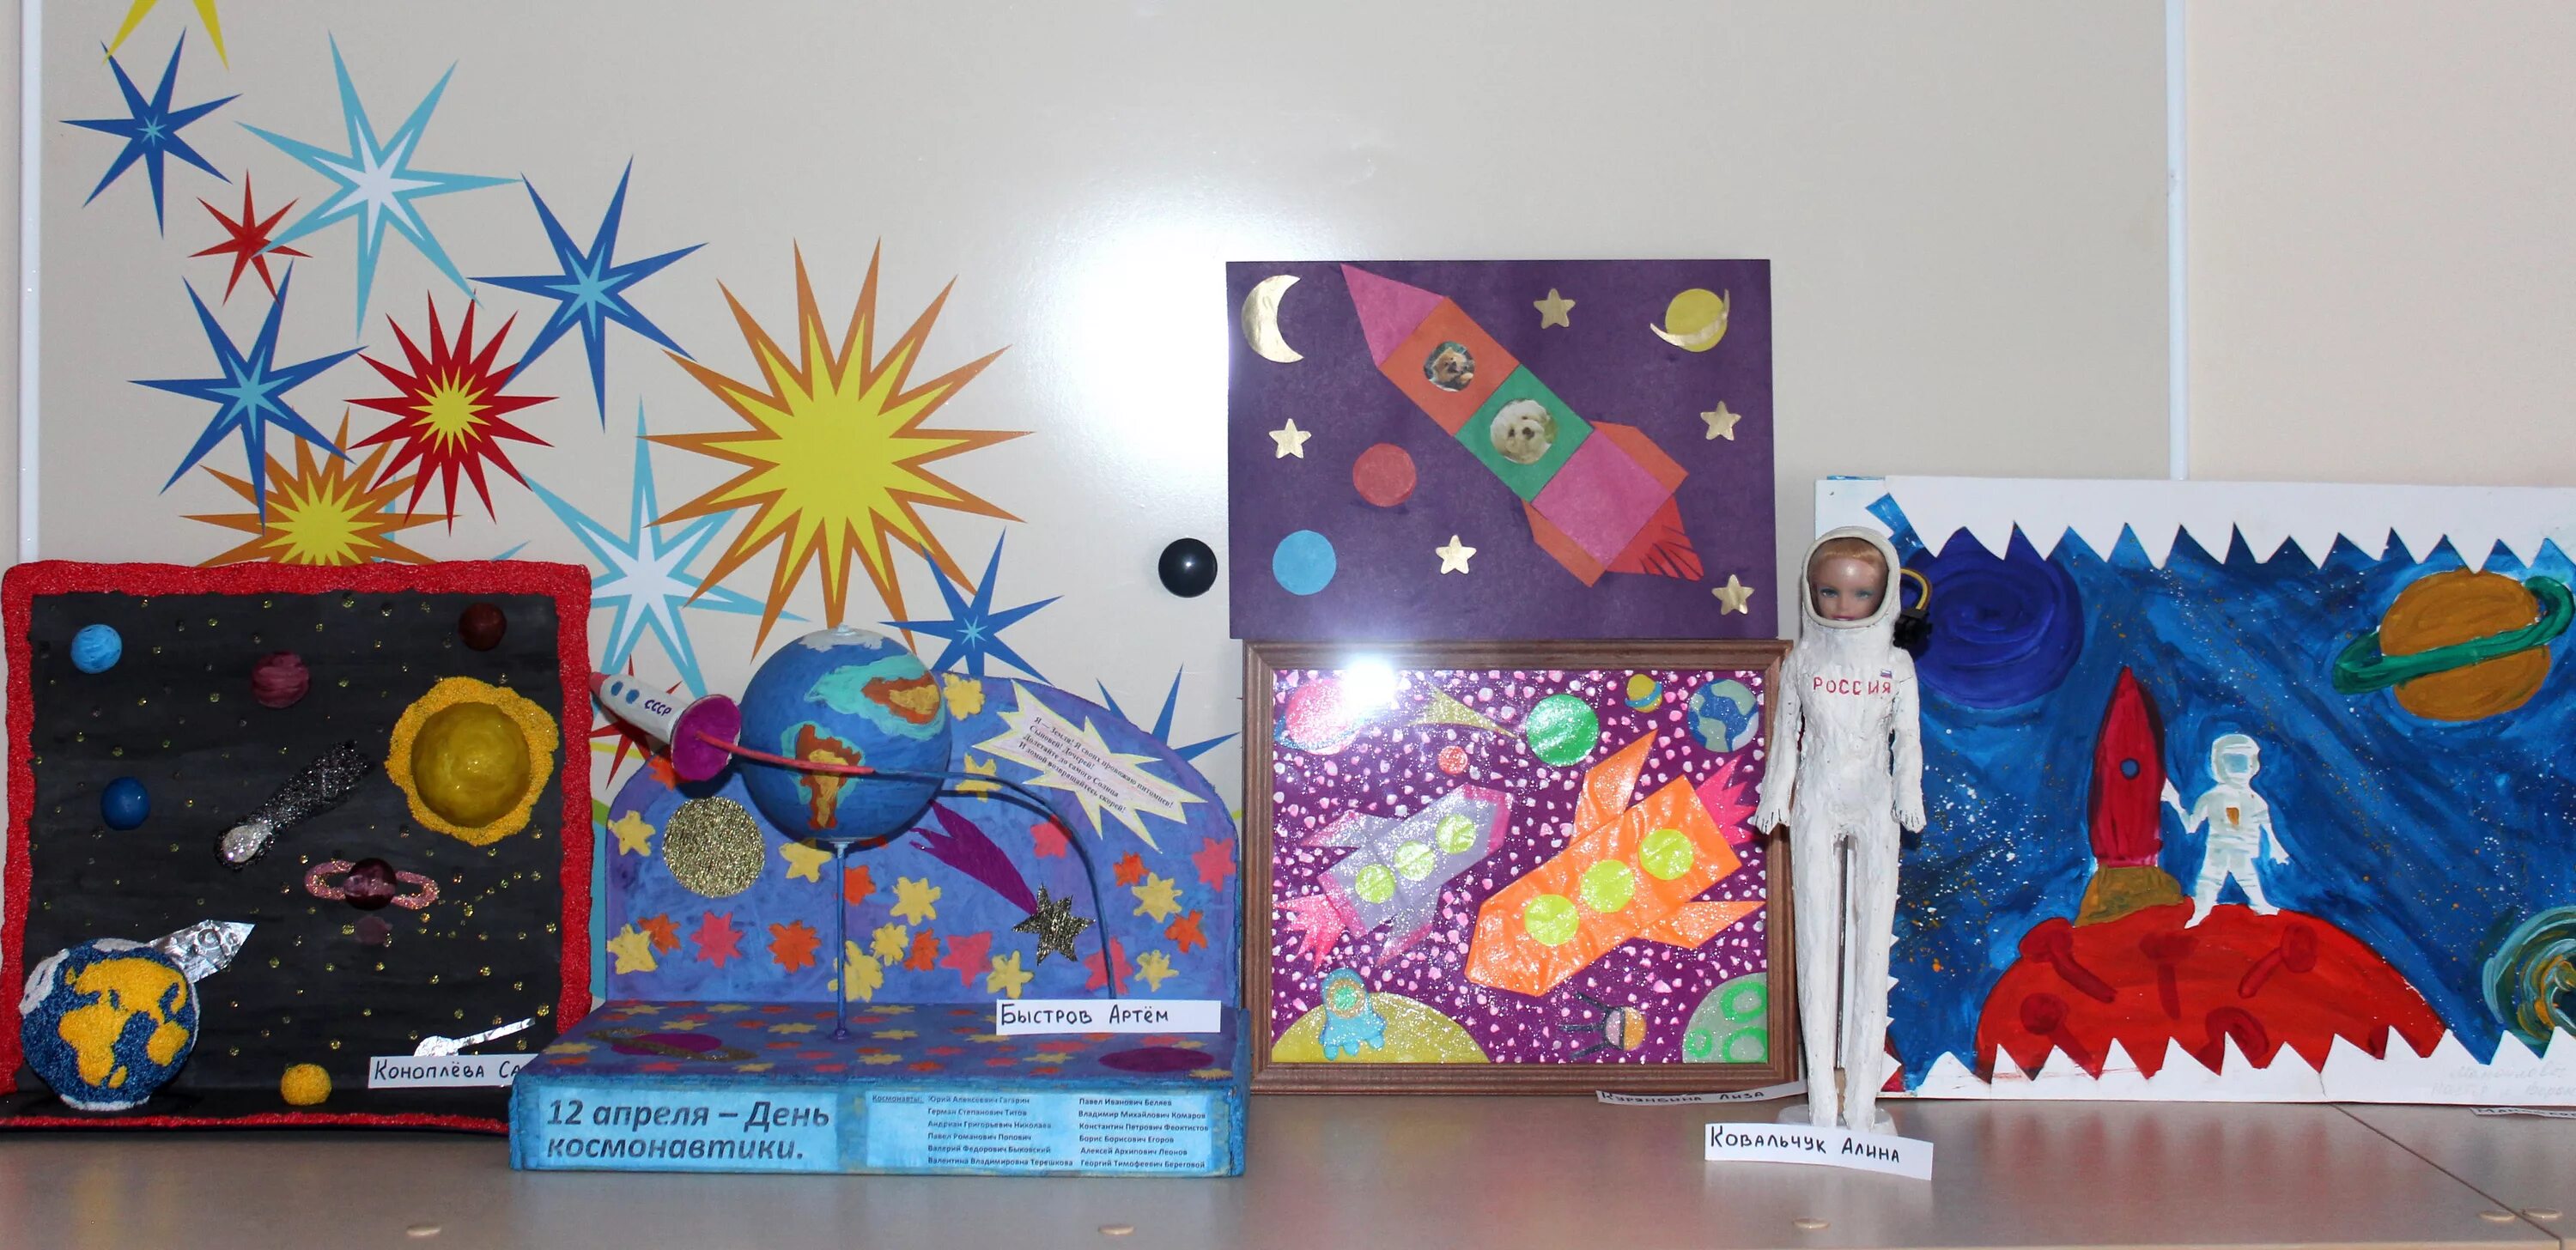 Поделка ко Дню космонавтики. Выставка ко Дню космонавтики в детском саду. Поделка ко Дню космонавтики в детский сад.